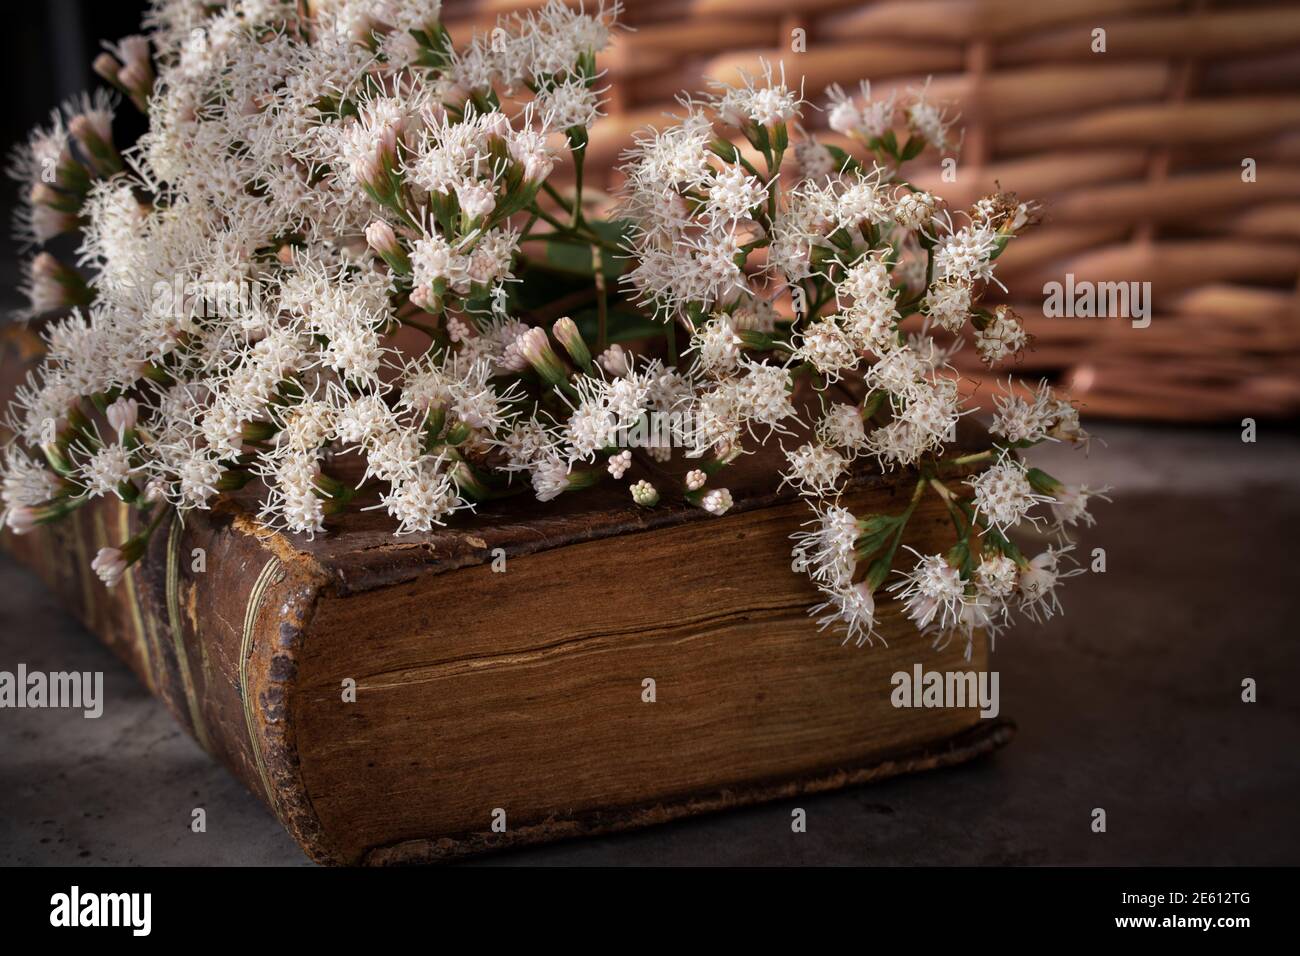 Décor Campestral dans des tons bruns montrant un vieux temps fermé livre avec bouquet de fleurs sauvages fraîches sur le dessus et détail du panier pique-nique en osier Banque D'Images